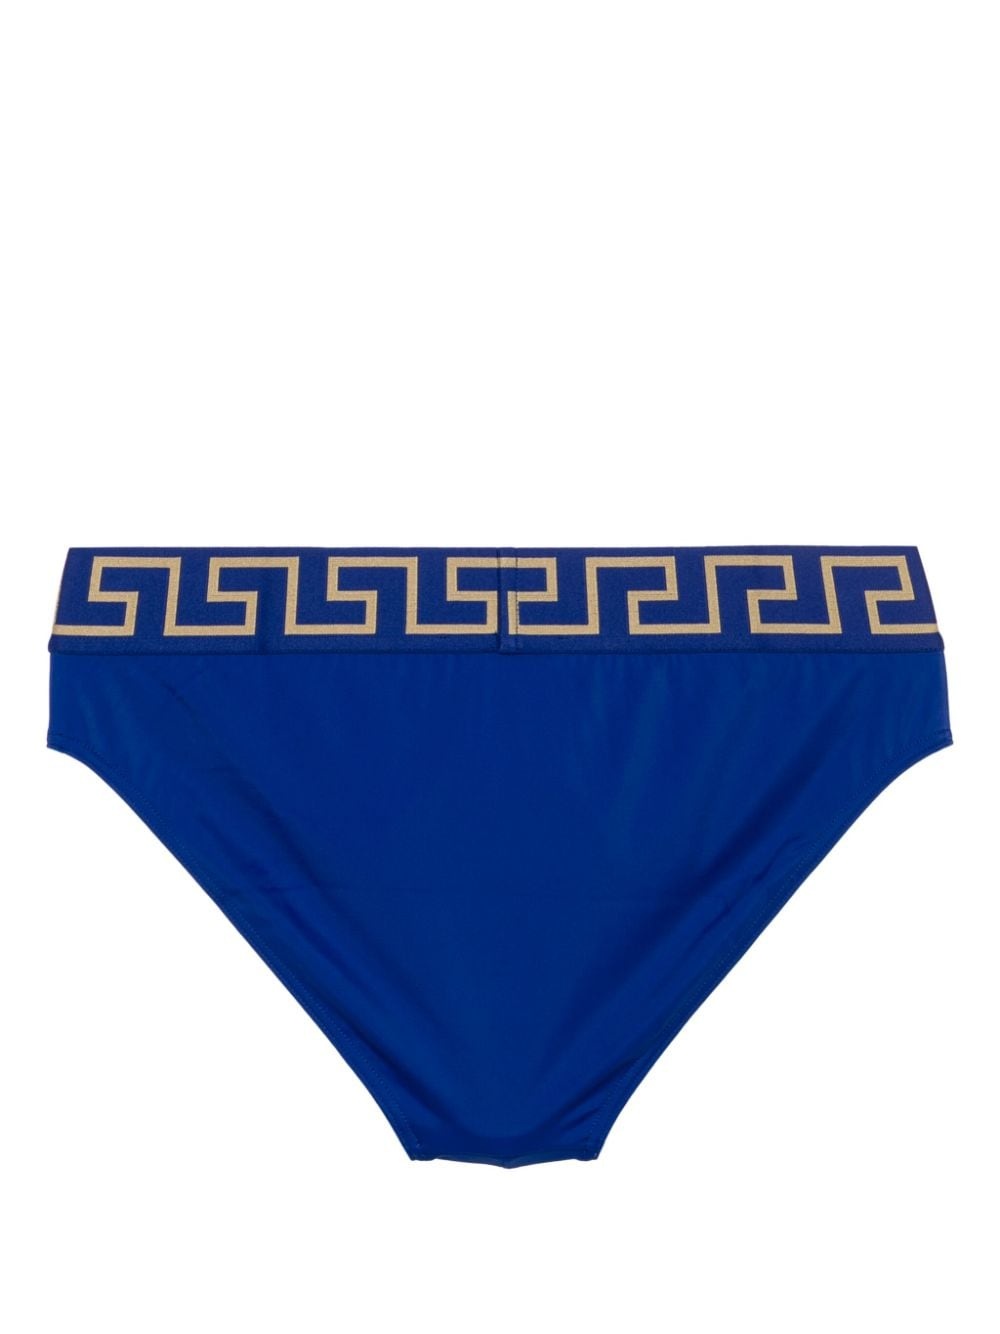 Greca-waistband swim briefs - 2